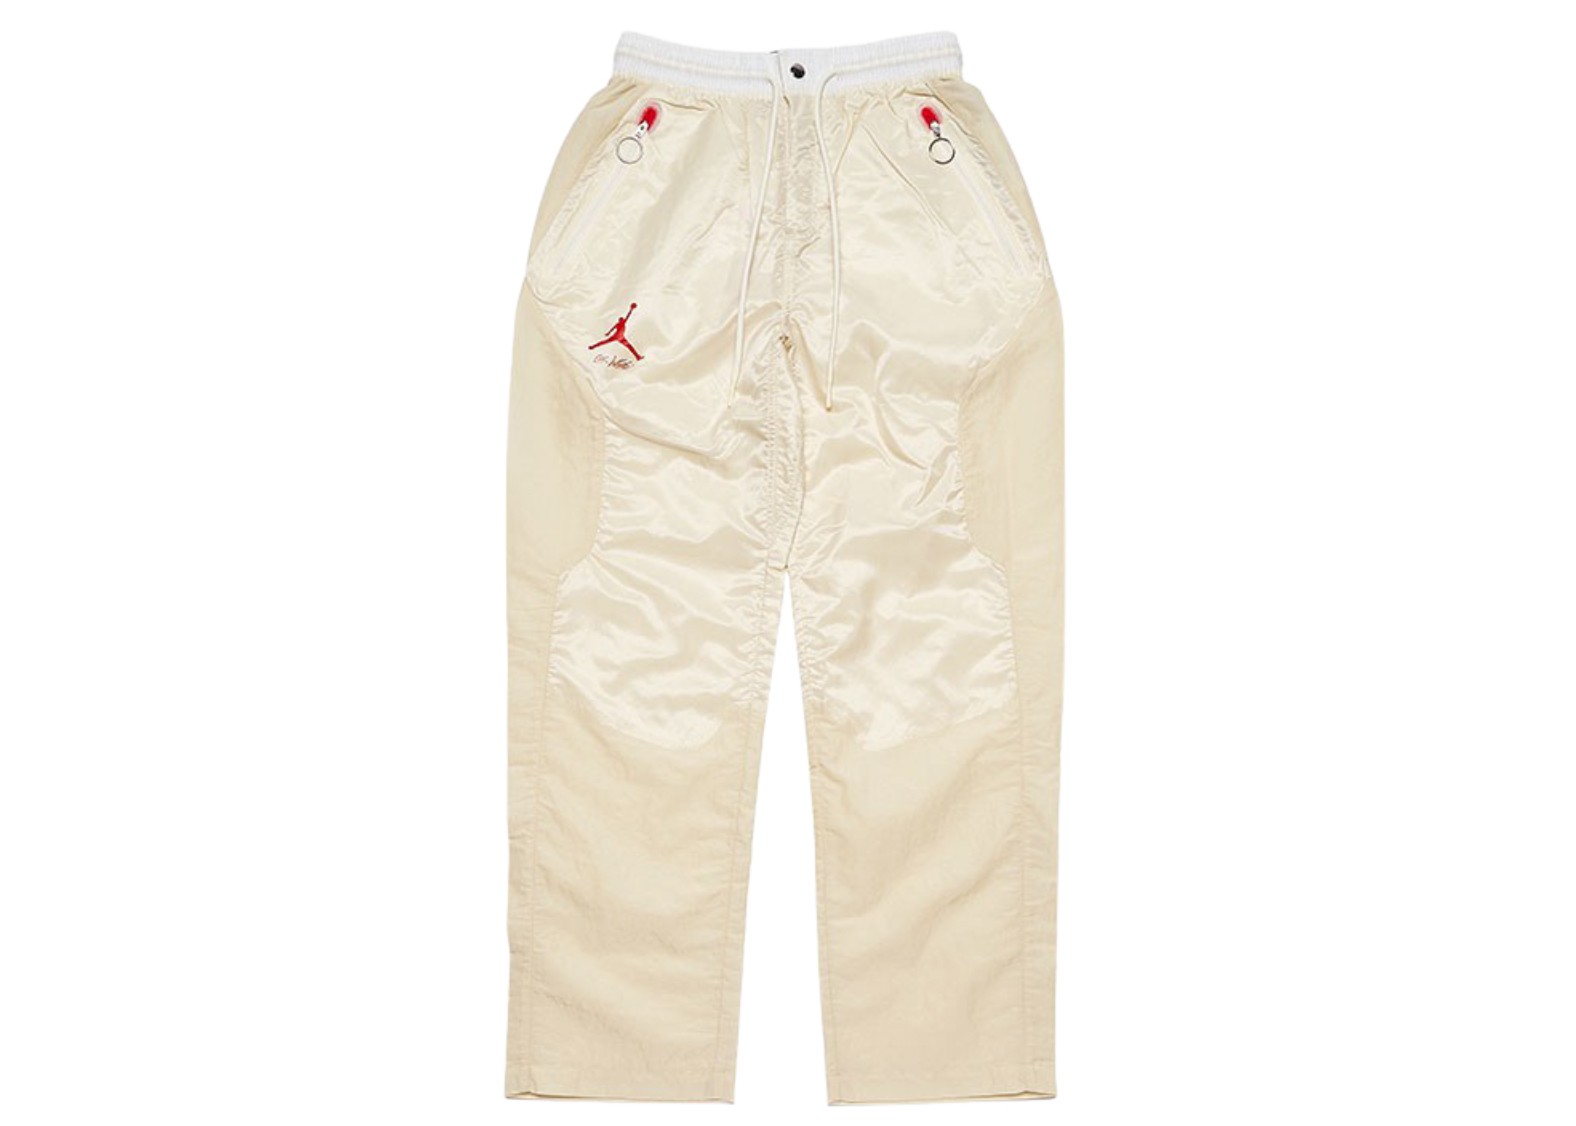 Off-White x Jordan Woven Pants White